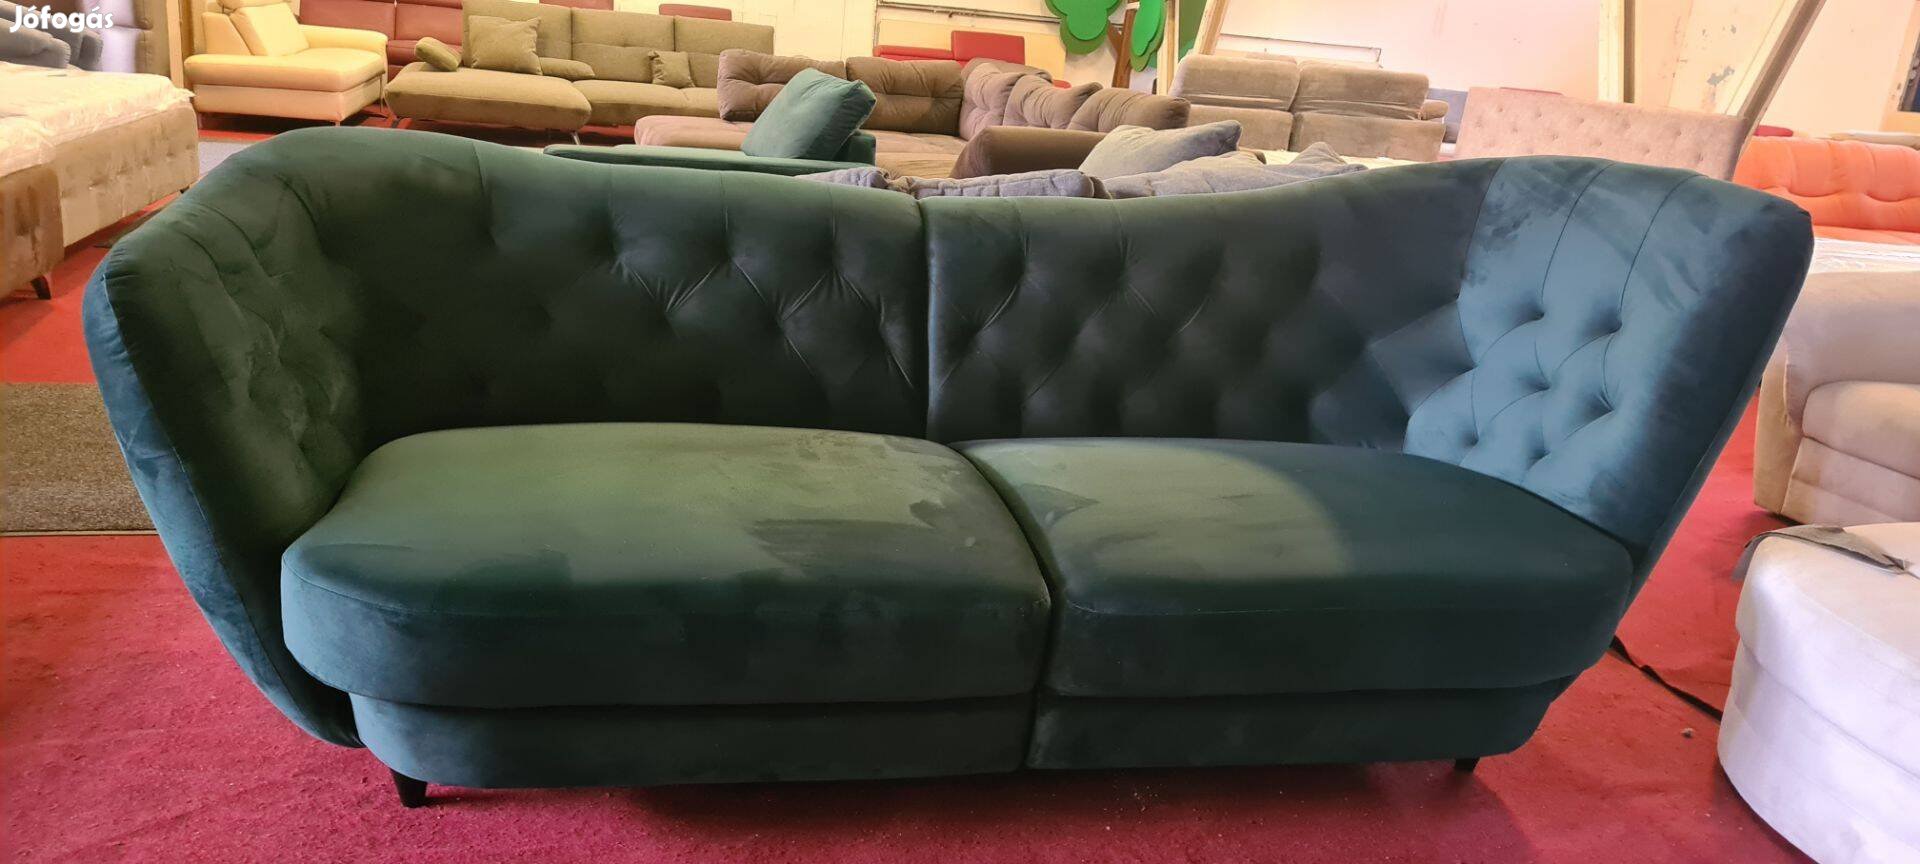 Álom ár:)új chesterfield zöld bársony 250cm szófa kanapé 189eft